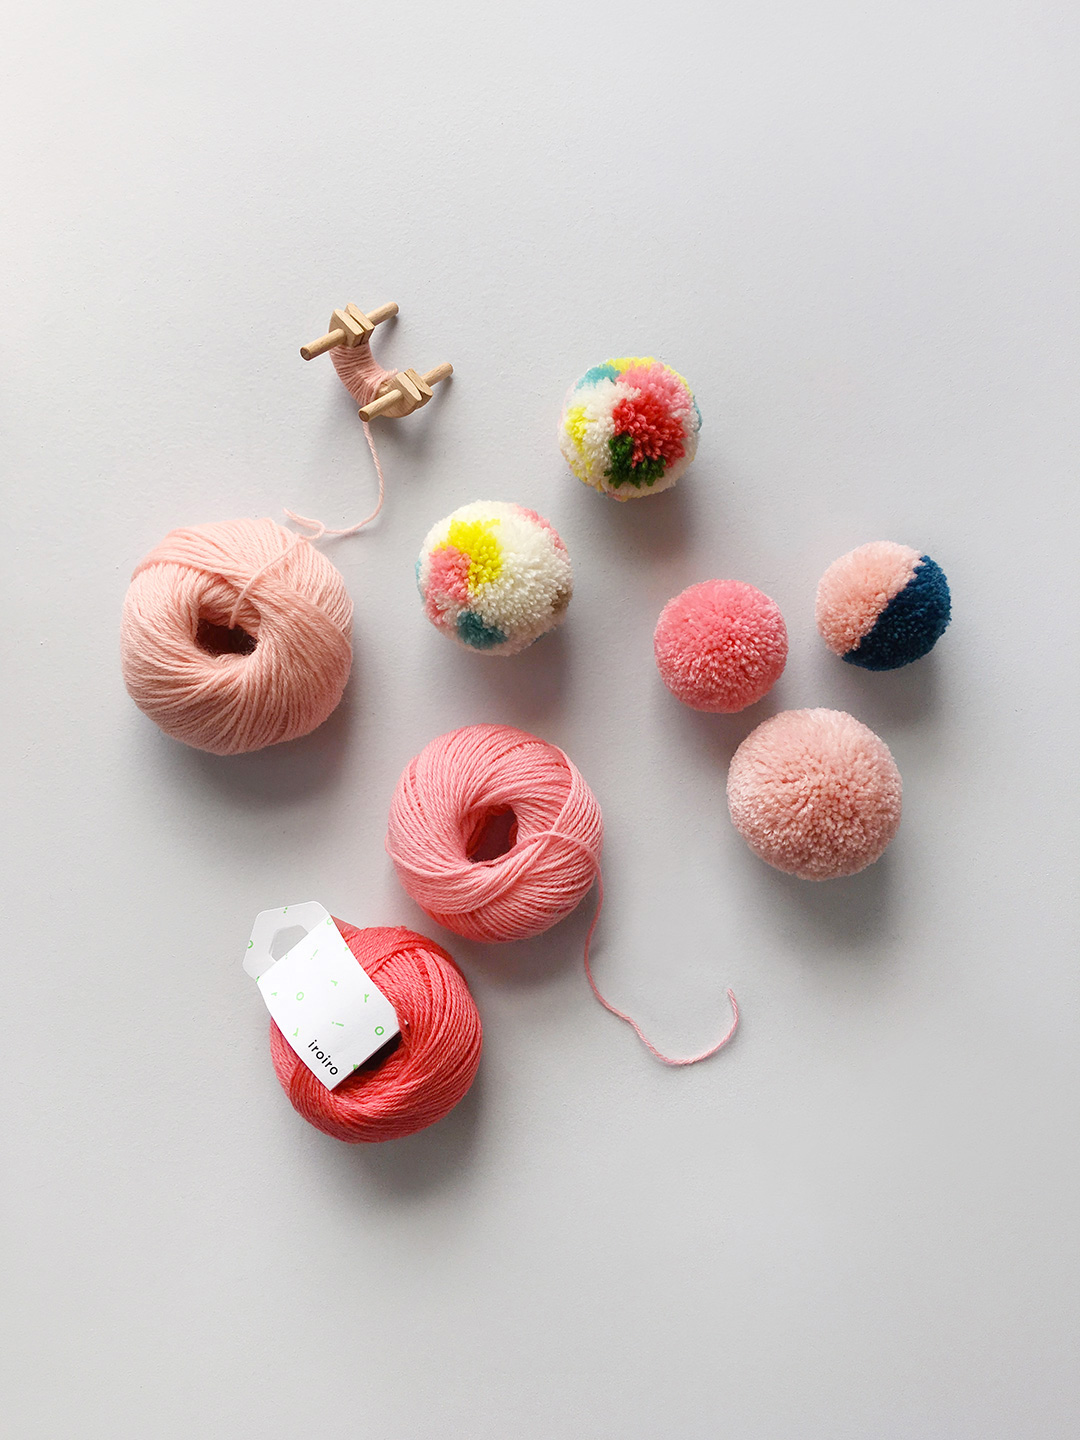 Daruma Iroiro Neon - The Little Yarn Store